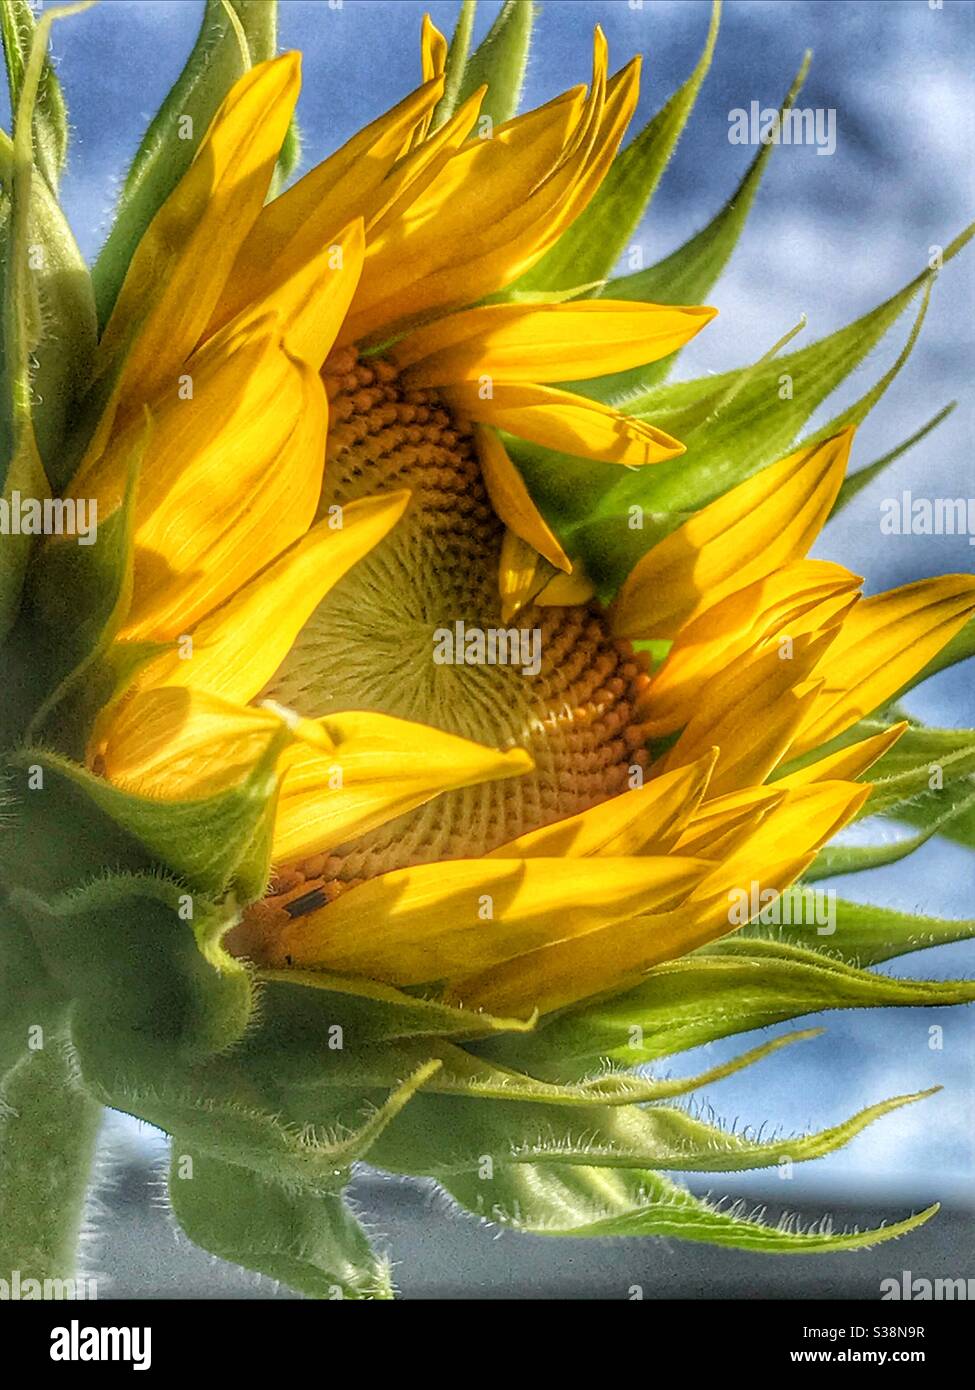 Sunflower opening Stock Photo